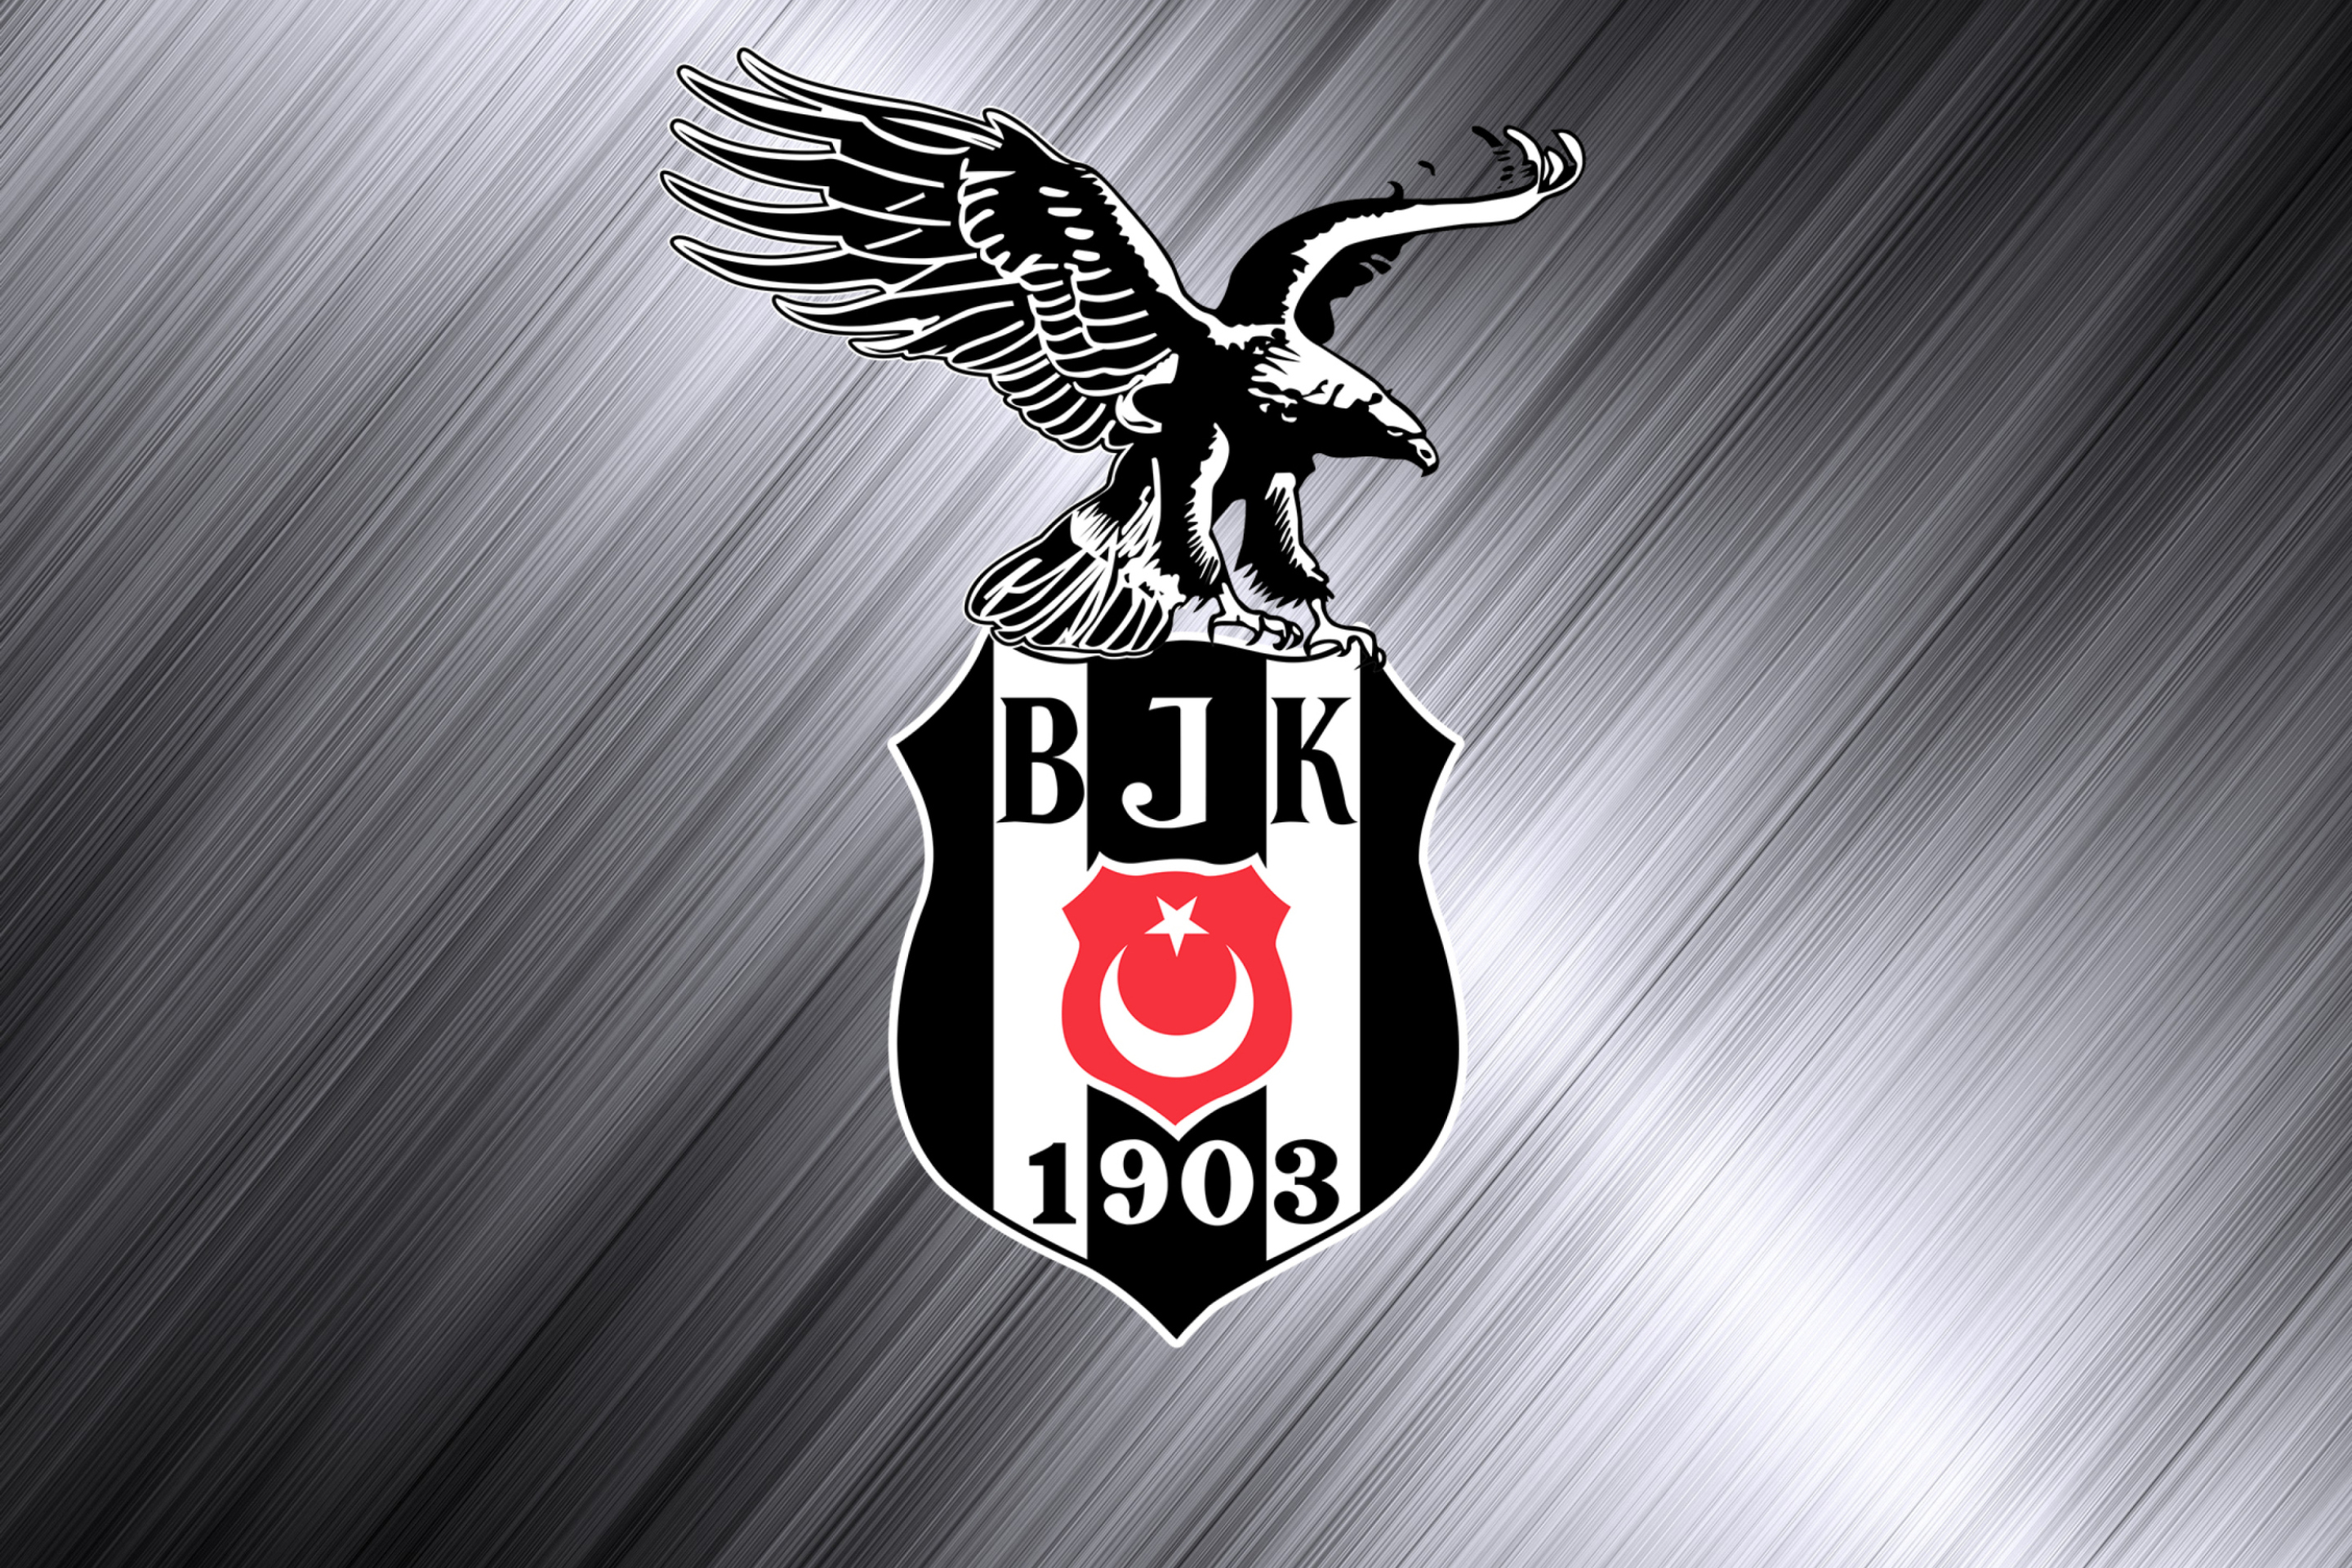 Besiktas - Beşiktaş J.K. wallpaper 2880x1920